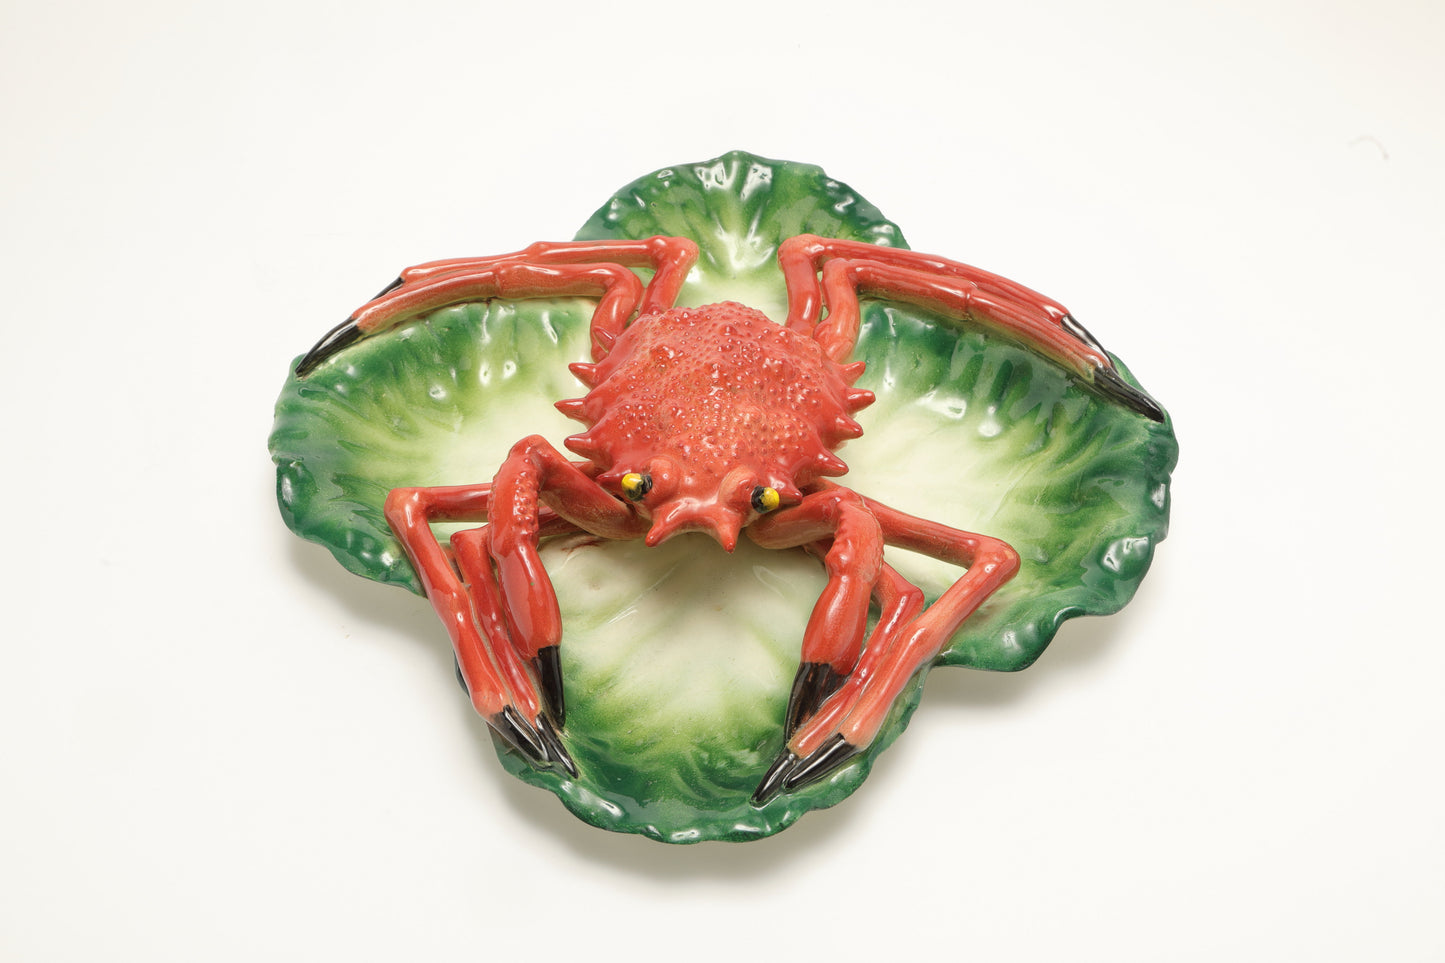 Orange spider crab ceramic centerpiece from the 50s